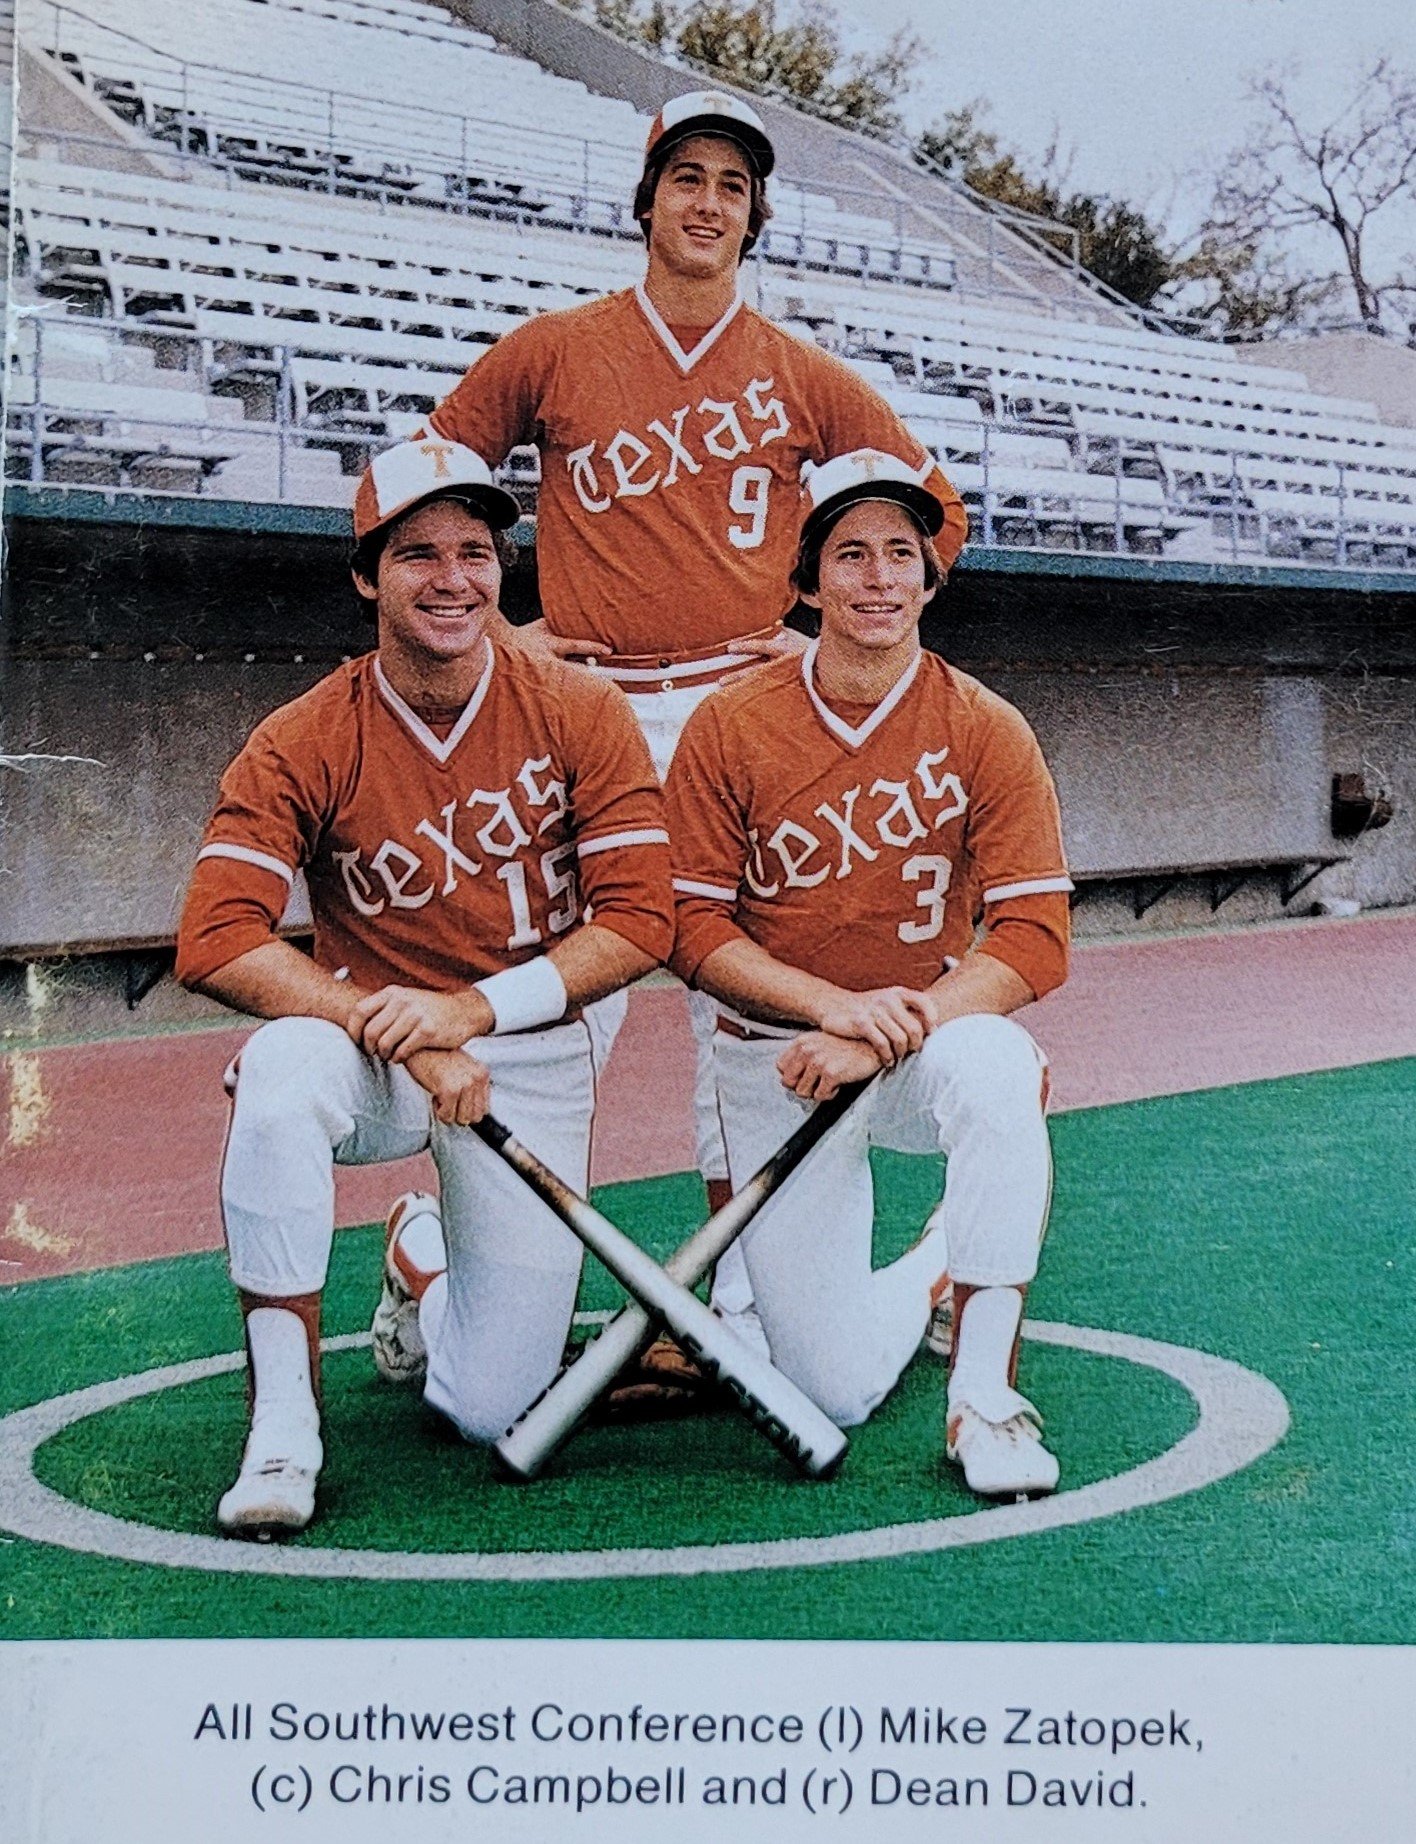 1981 uniforms, caps. bats